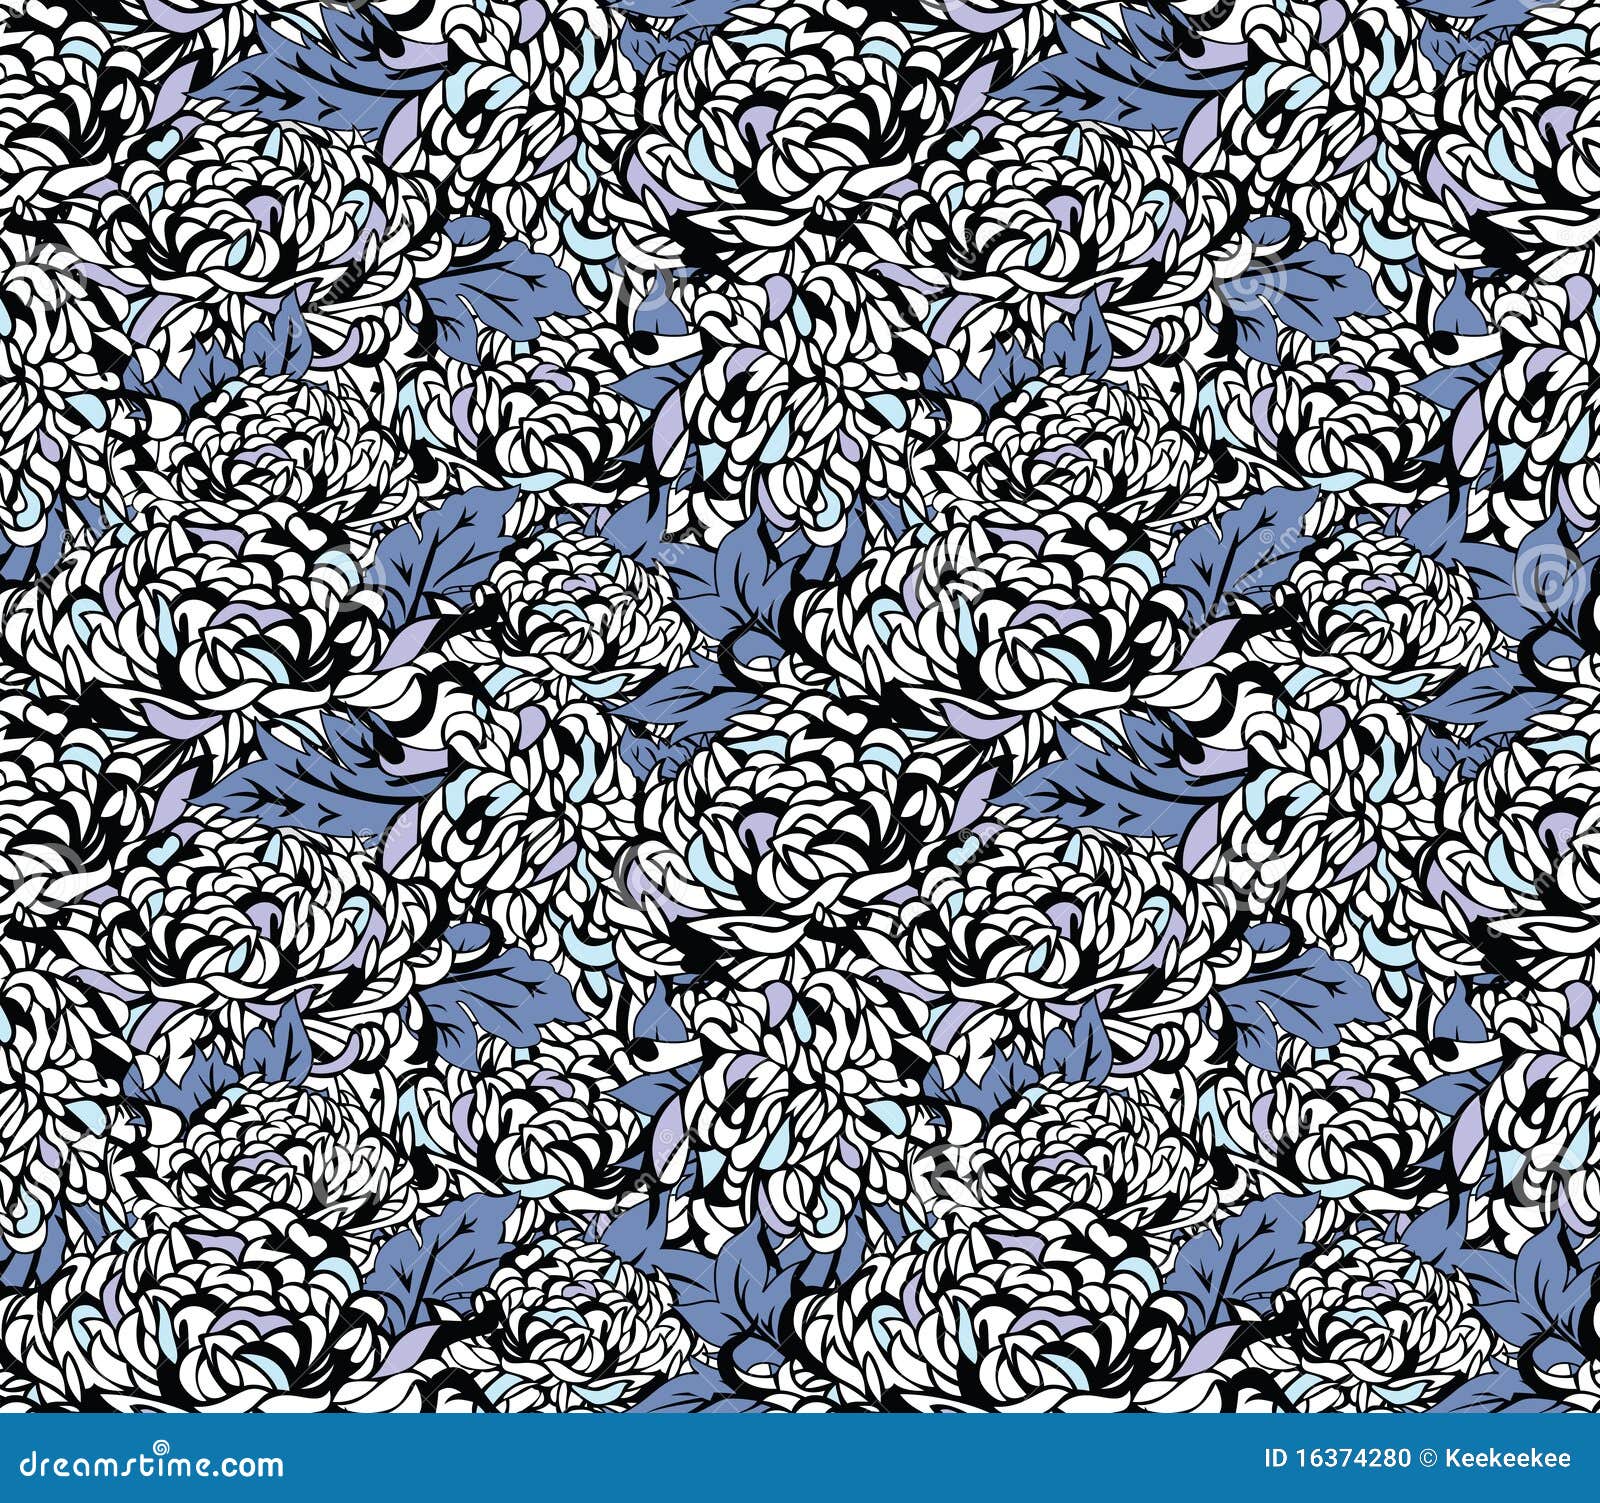 Japanse bloemenpatronen. Een blauw chrysanten bloemen naadloos patroon